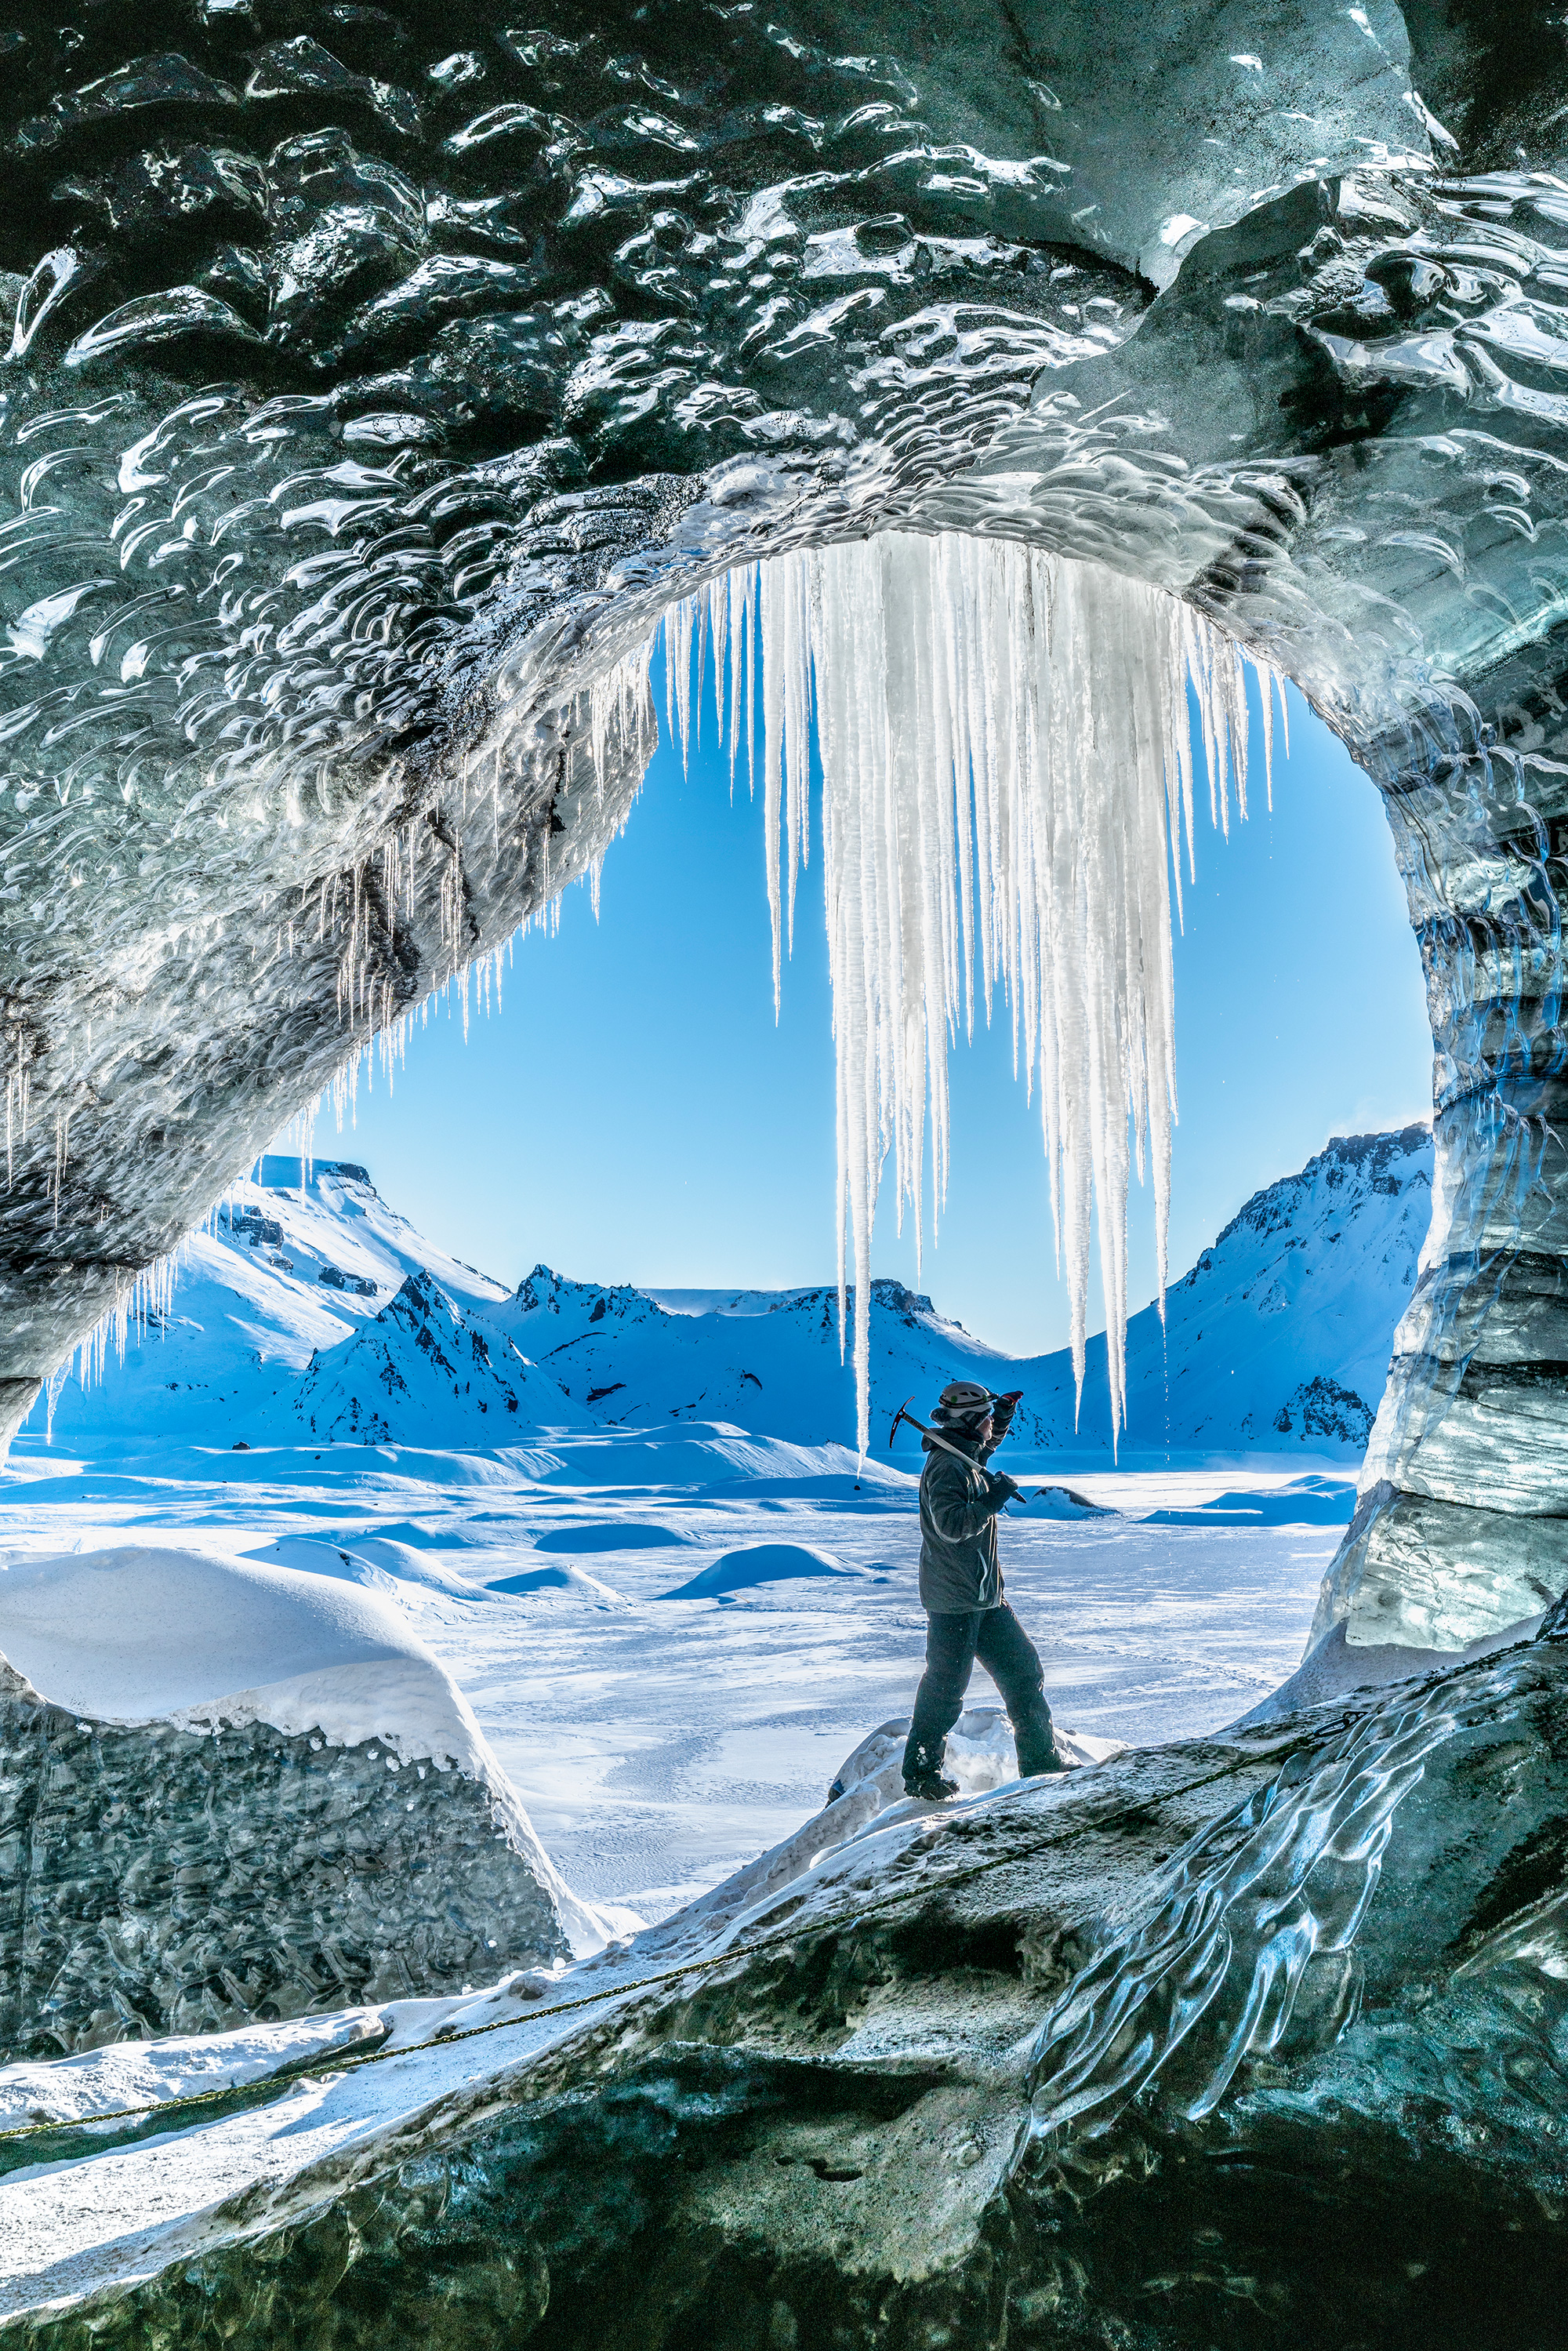 แพ็คเกจทัวร์ถ้ำน้ำแข็งที่คัทลาทางตอนใต้วันเดียว |จากเรคยาวิก